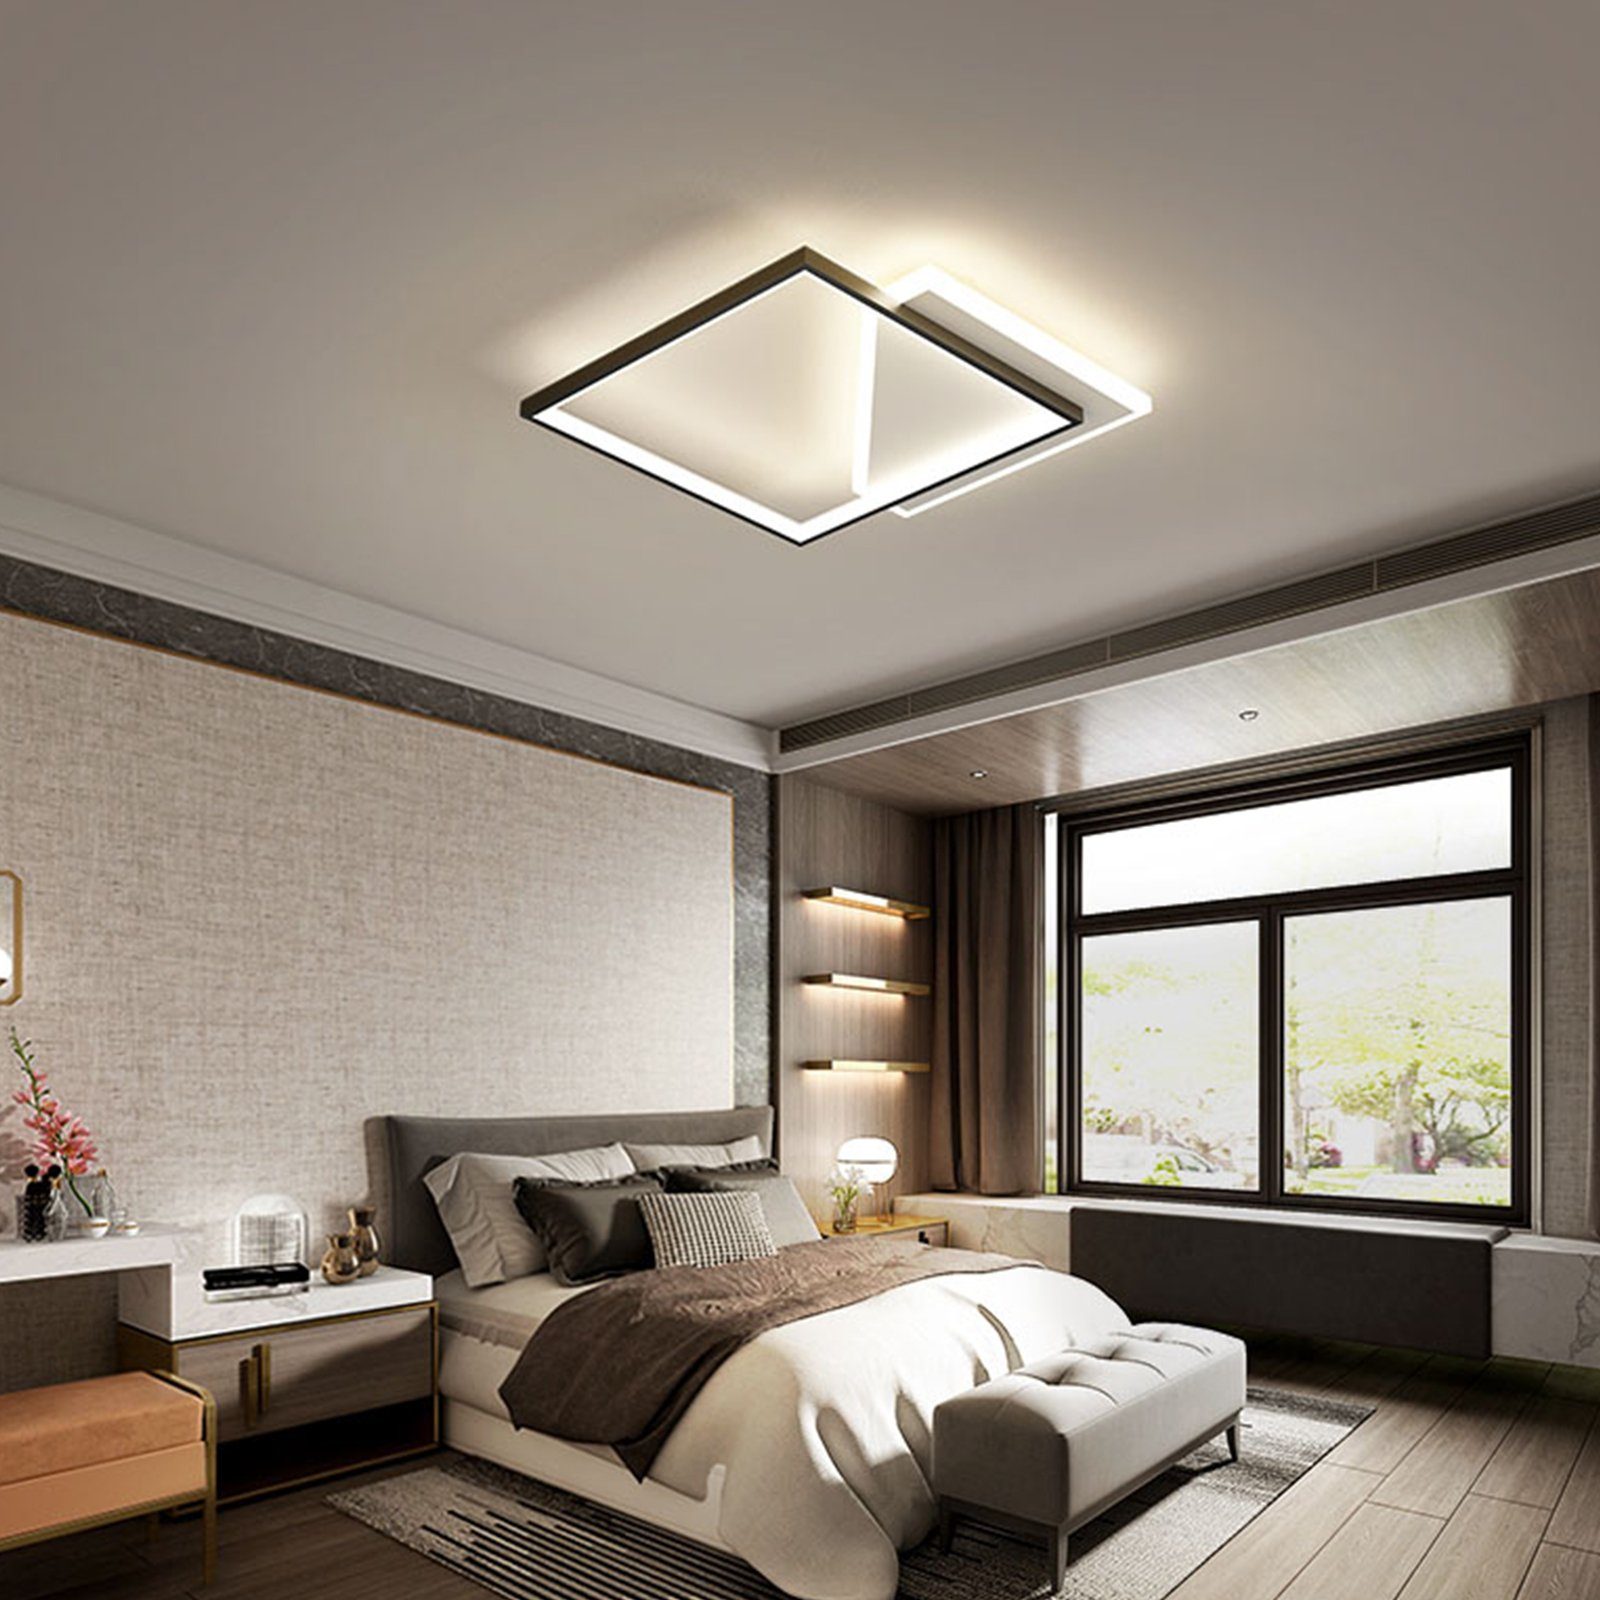 Daskoo Deckenleuchten 30W LED Deckenlampe 50cm Modern Wohnzimmerlampe mit Fernbedienung, LED fest integriert, Warmweiß,Neutralweiß,Kaltweiß, LED Deckenleuchte stufenlos dimmbar